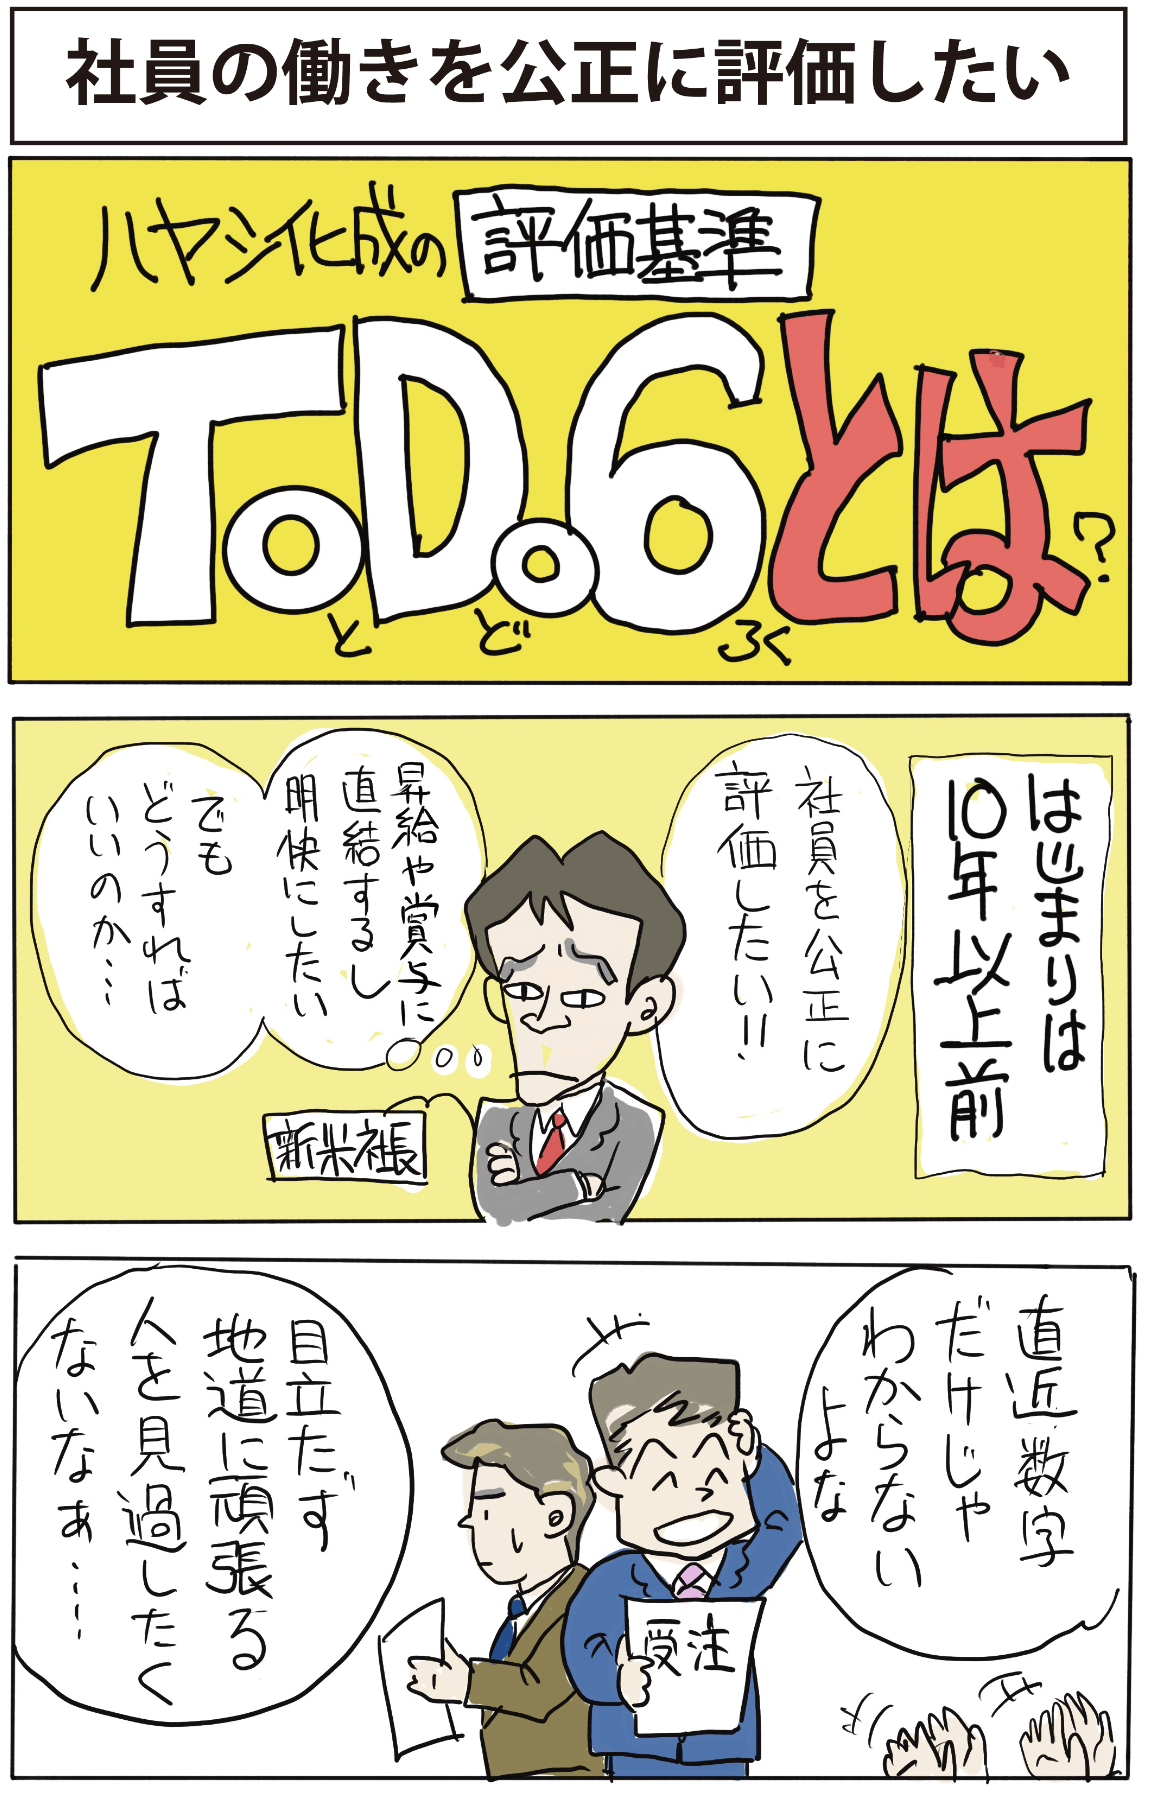 ToDo6